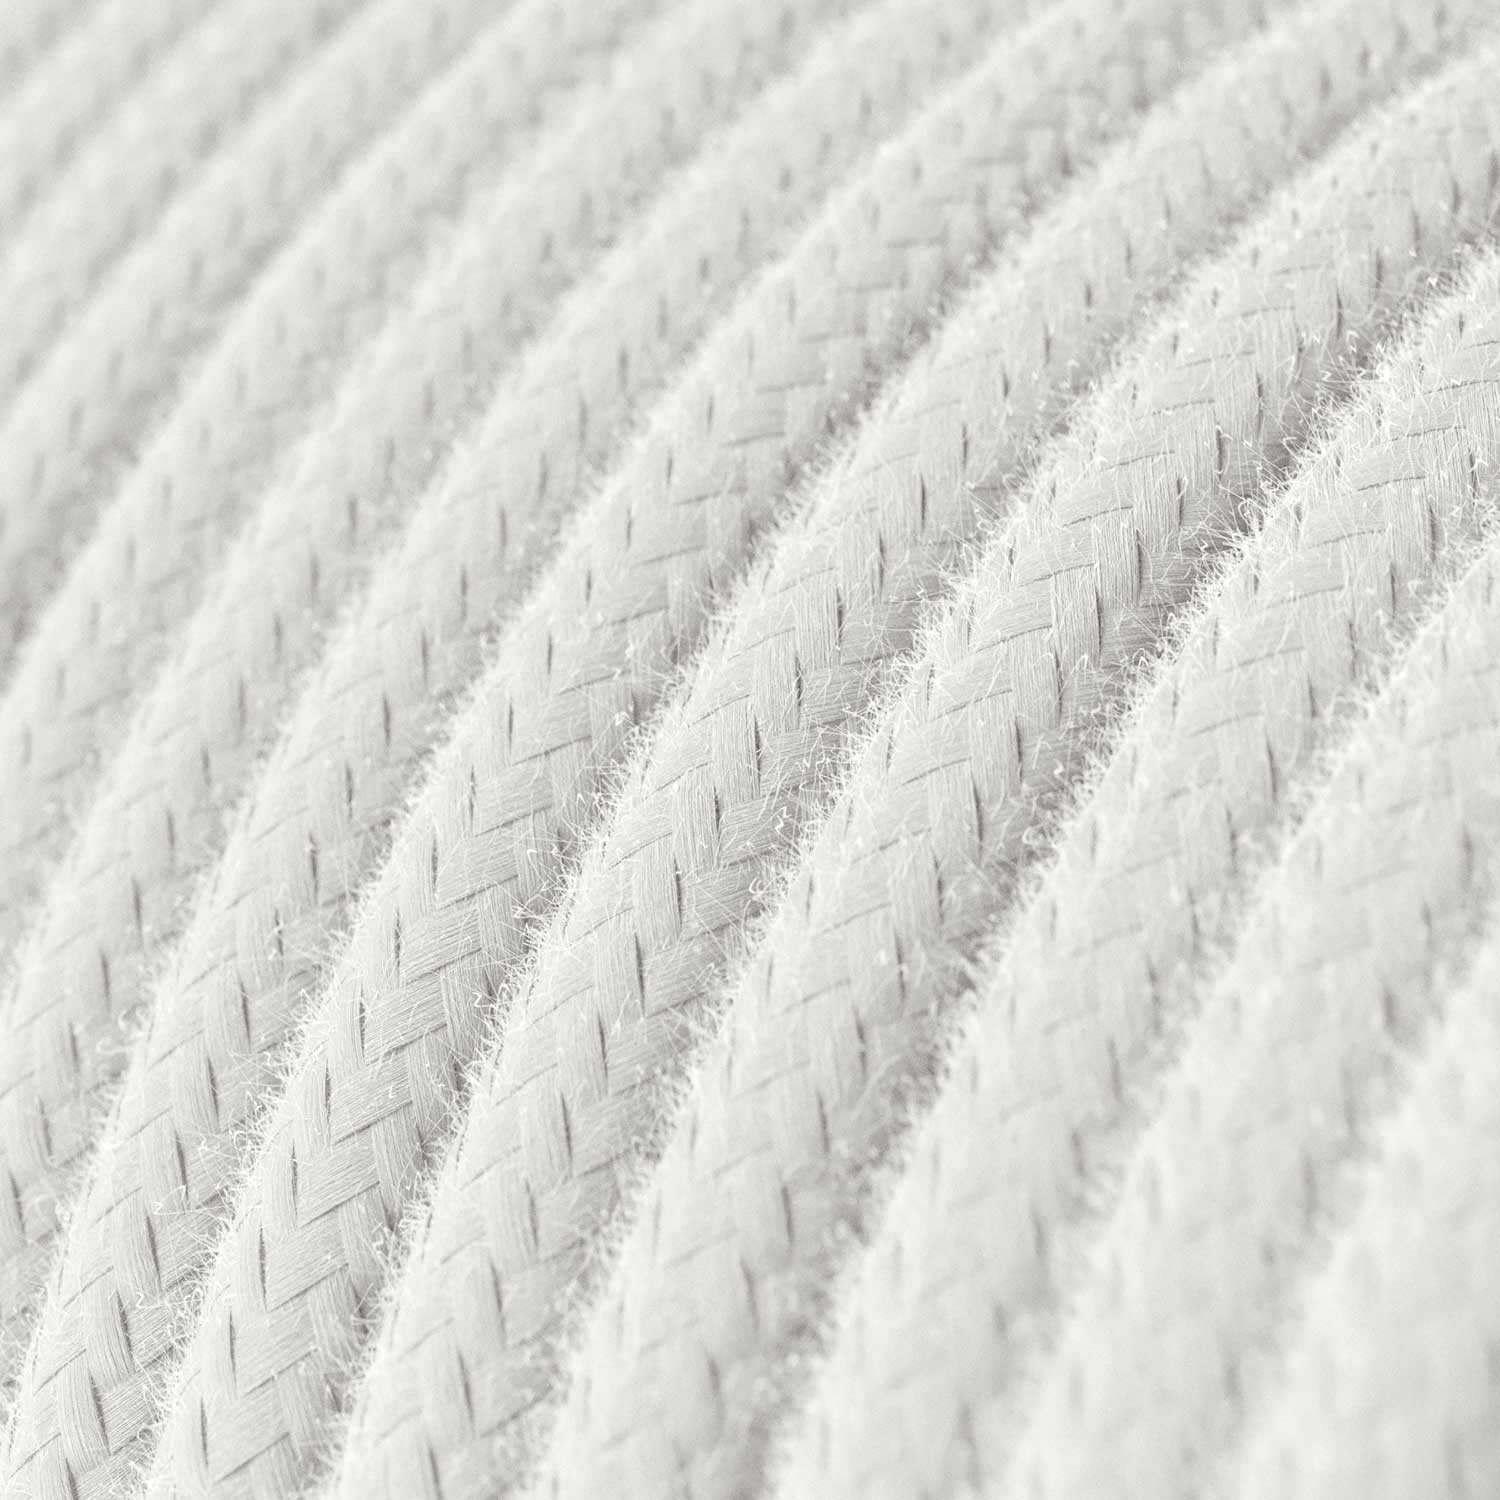 Textilkabel, lichtweiß, aus Baumwolle - Das Original von Creative-Cables - RC01 rund 2x0,75mm / 3x0,75mm